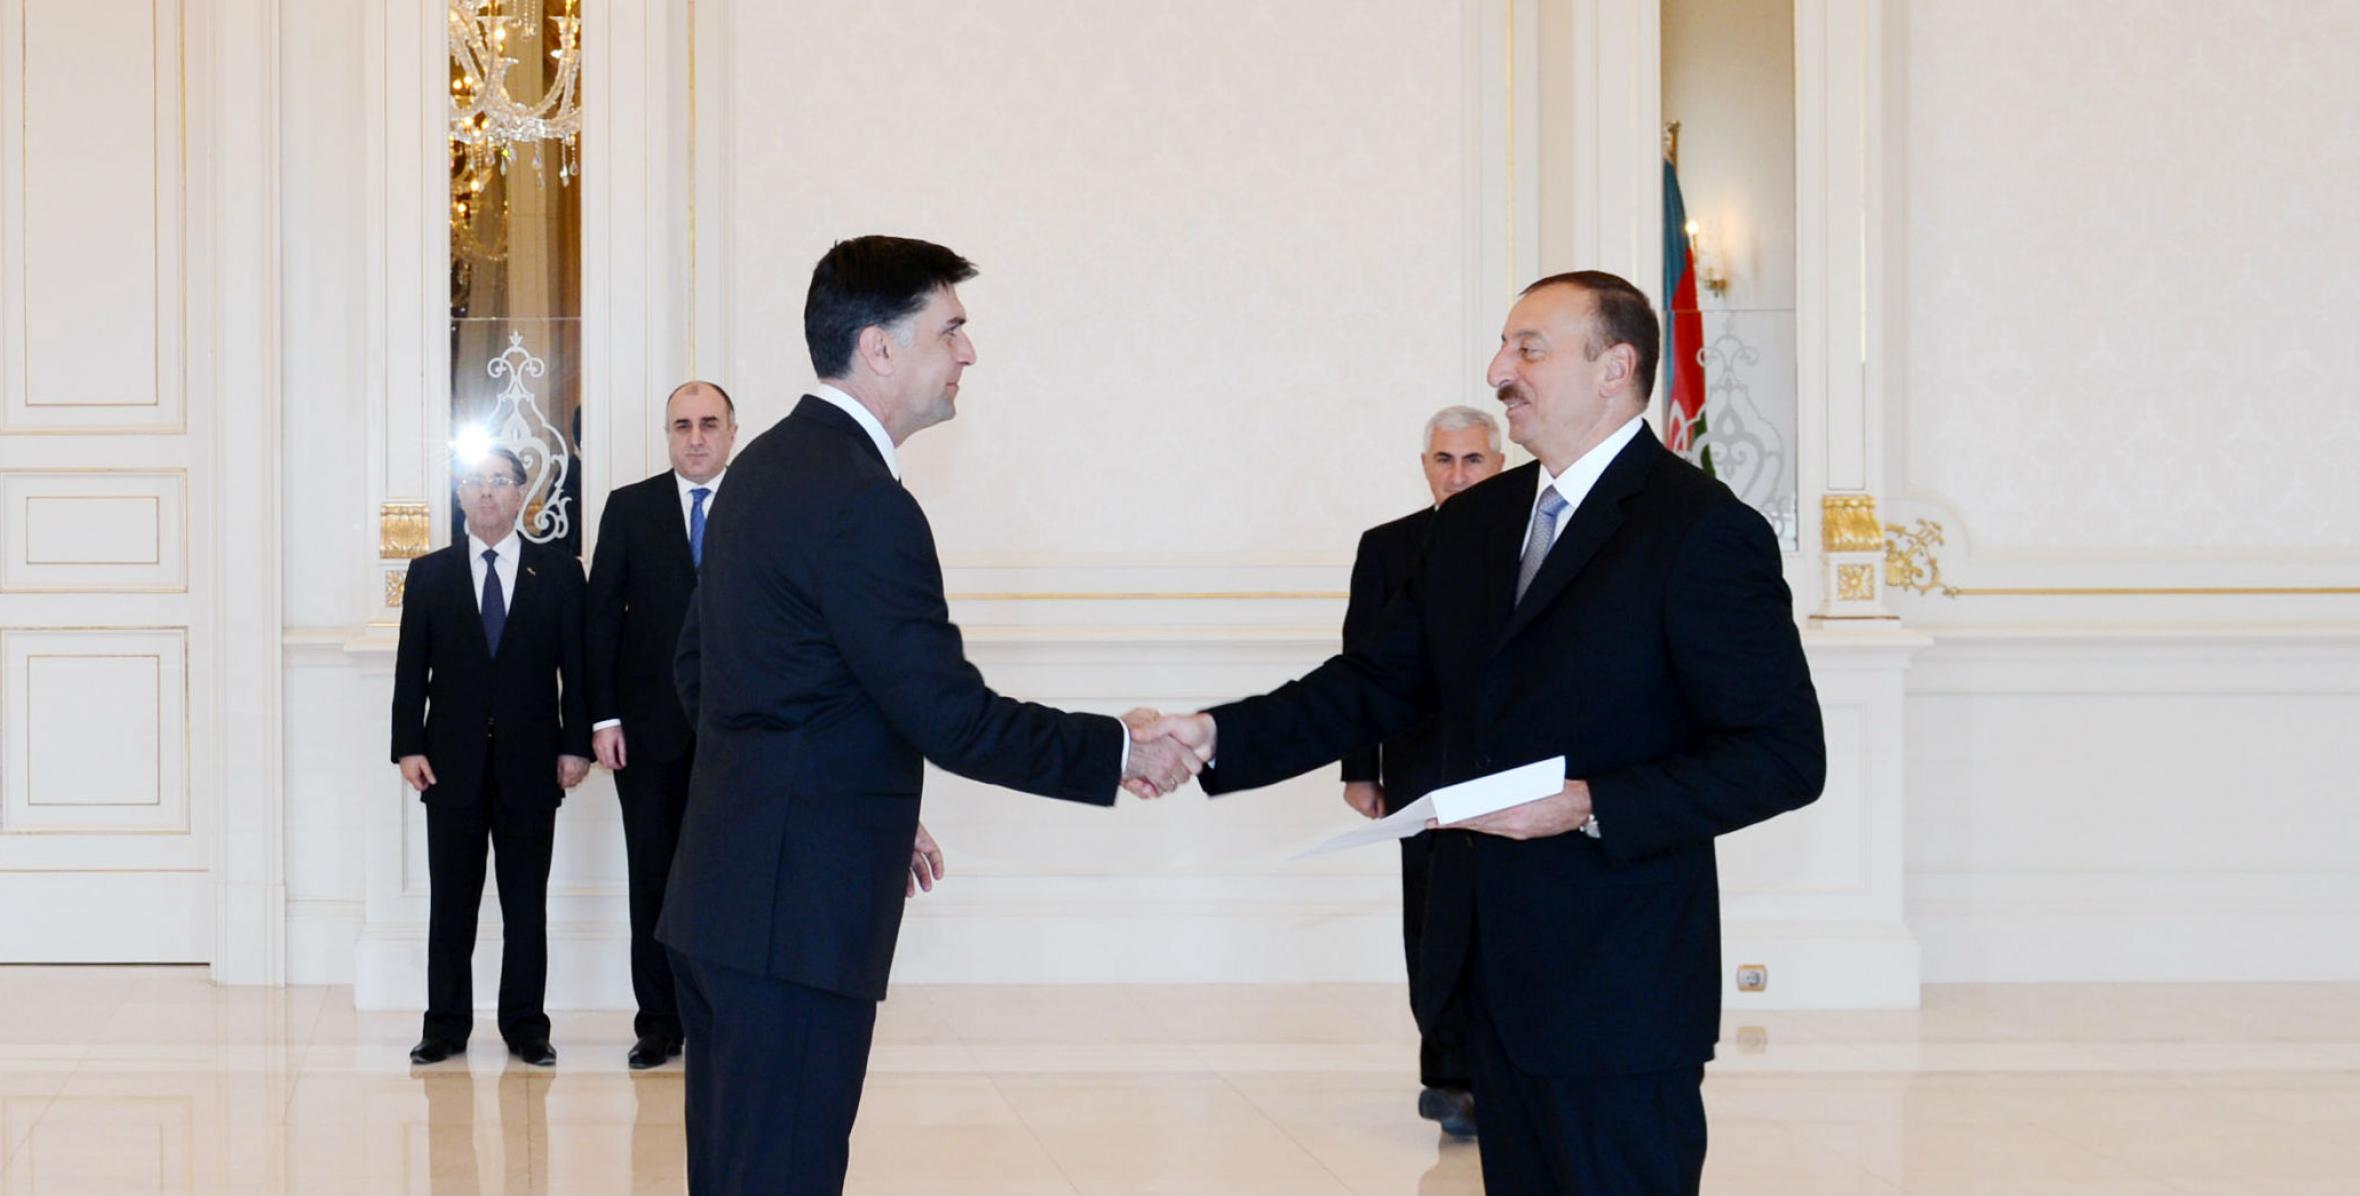 Ильхам Алиев принял верительные грамоты новоназначенного посла Боснии и Герцеговины в Азербайджане